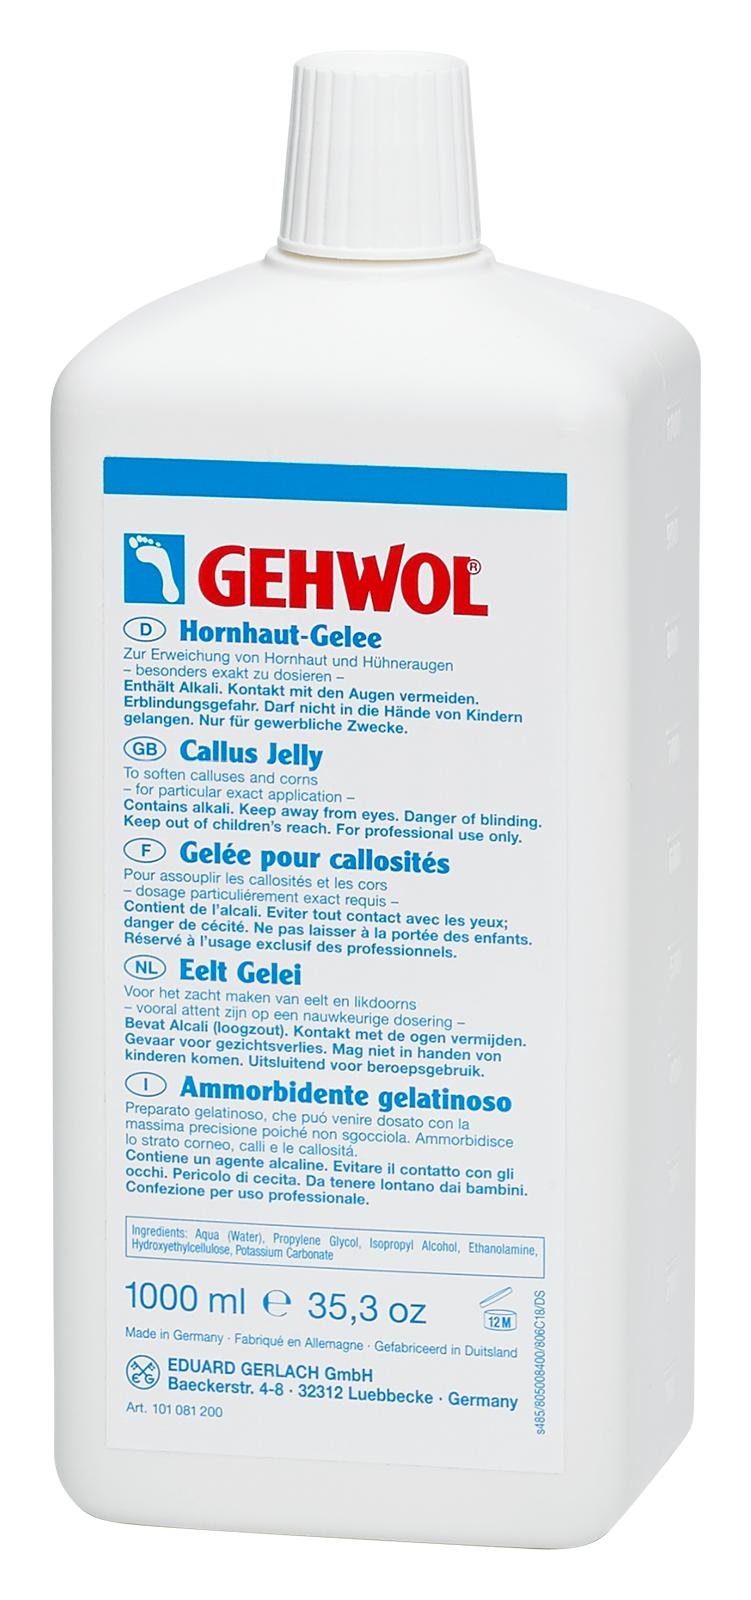 GEHWOL Hornhaut-Gelee 1 Ltr.